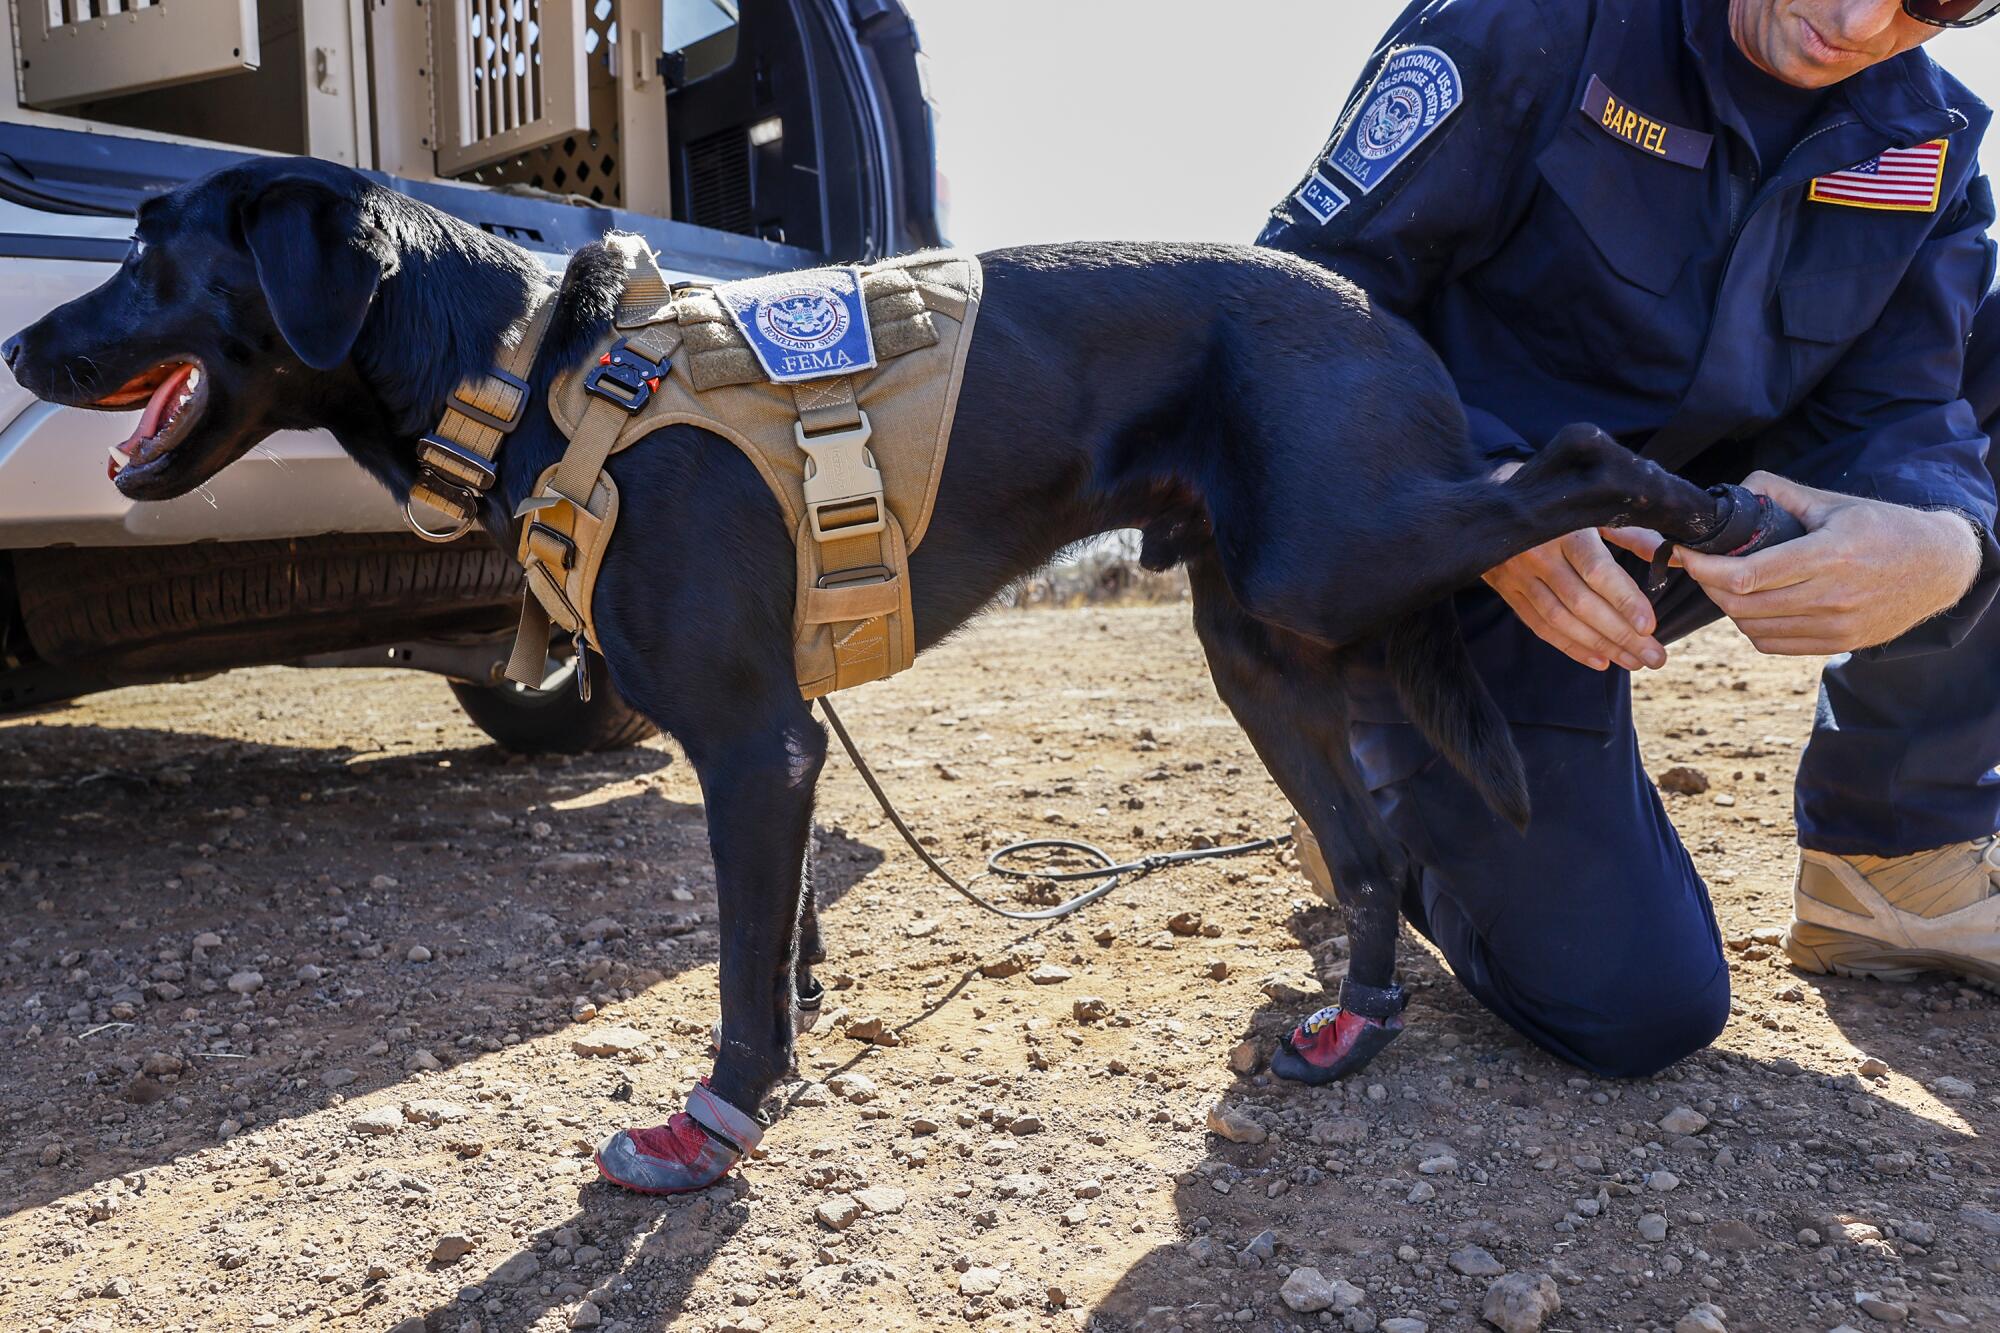 Einem arbeitenden schwarzen Labrador wird in Stiefeletten geholfen.